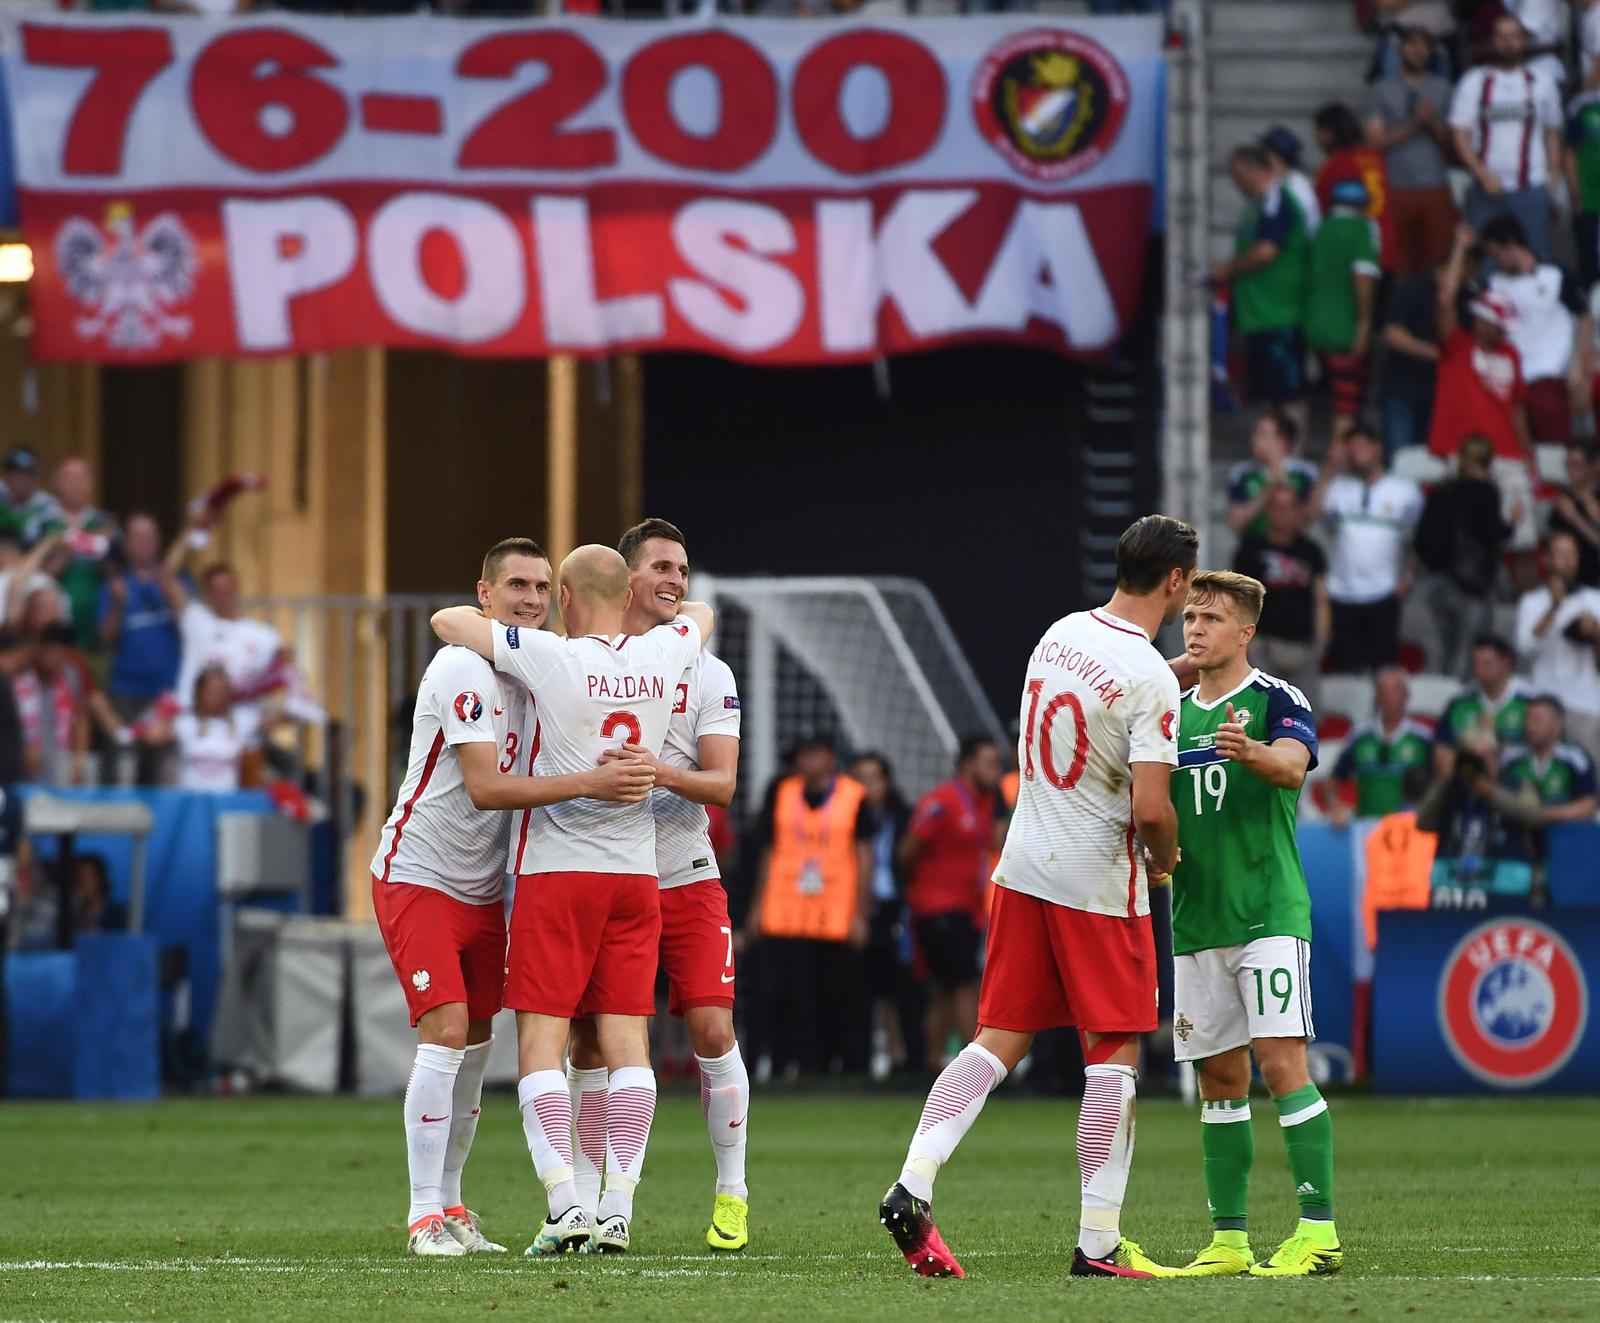 Reprezentacja Polski w piłce nożnej rozpoczęła mistrzostwa Europy od zwycięstwa nad Irlandią Północną.